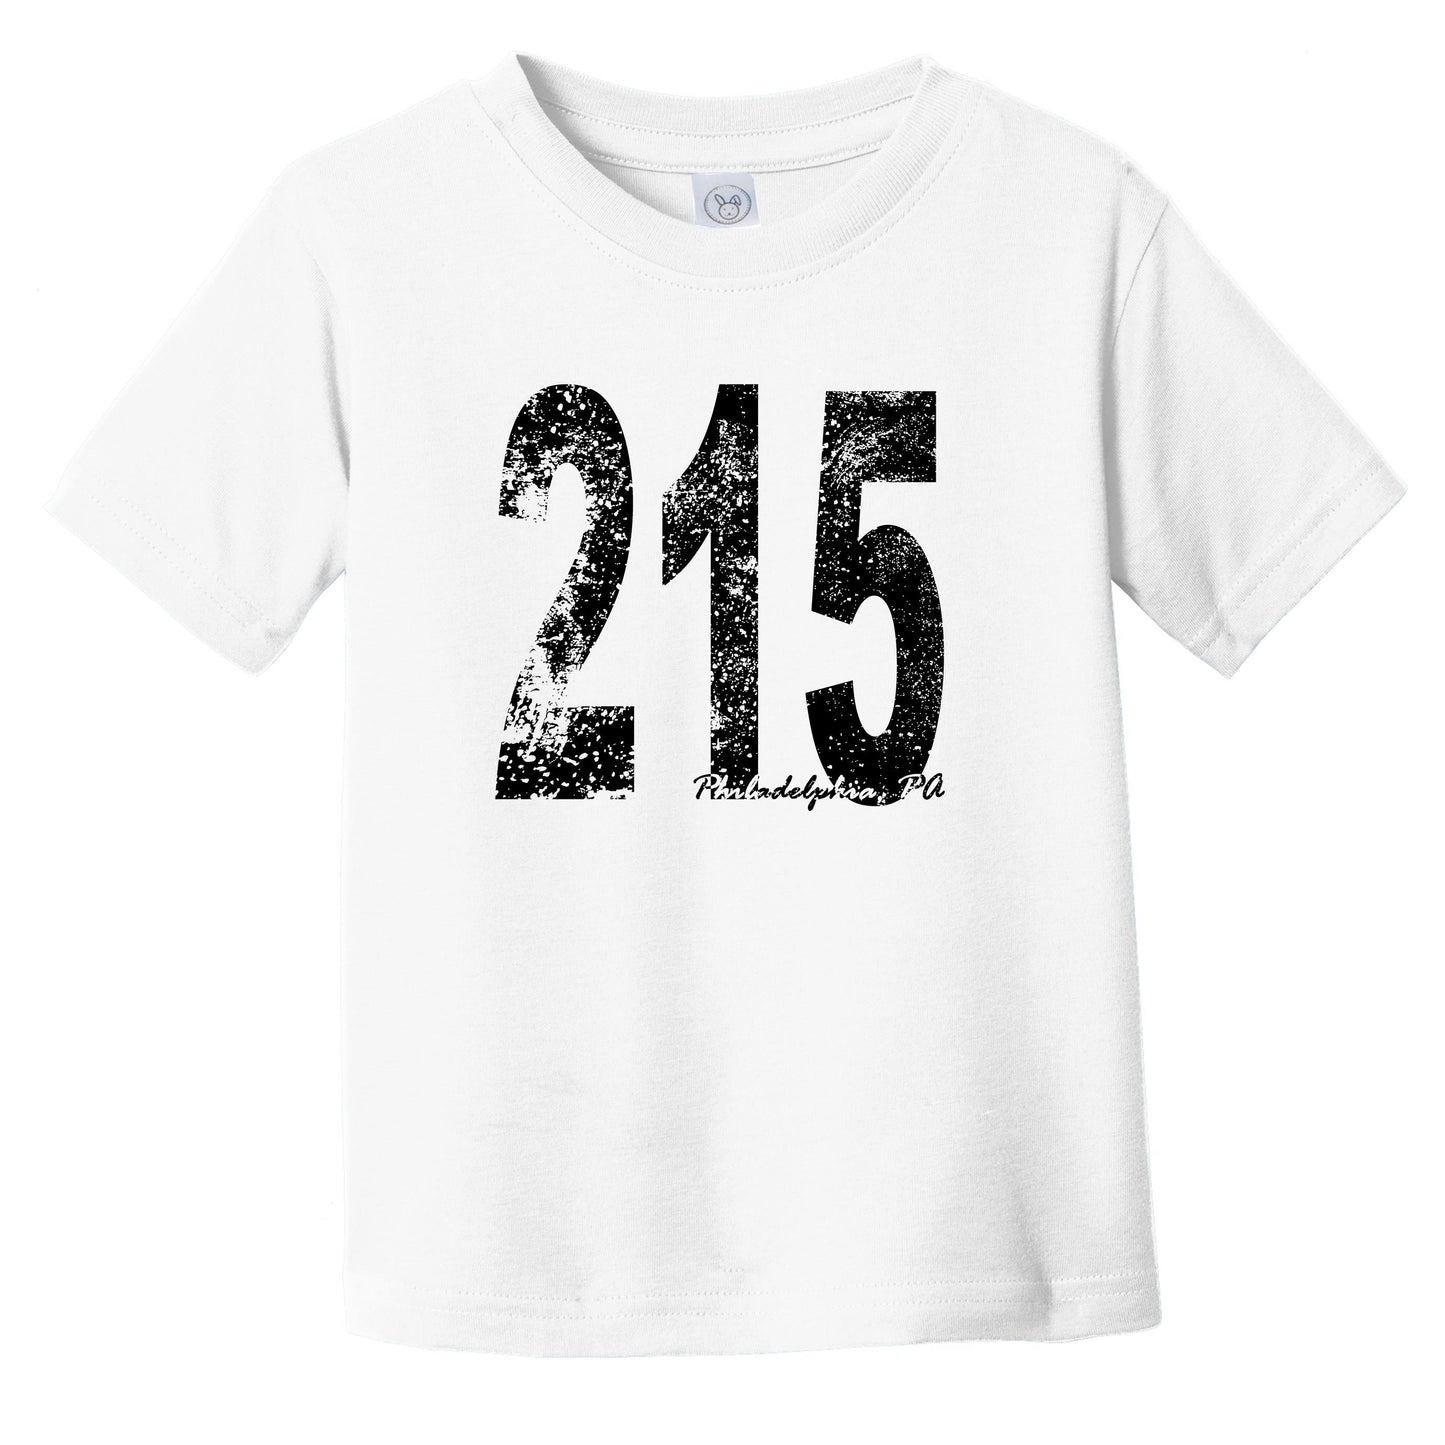 215 Philadelphia Pennsylvania Area Code Infant Toddler T-Shirt